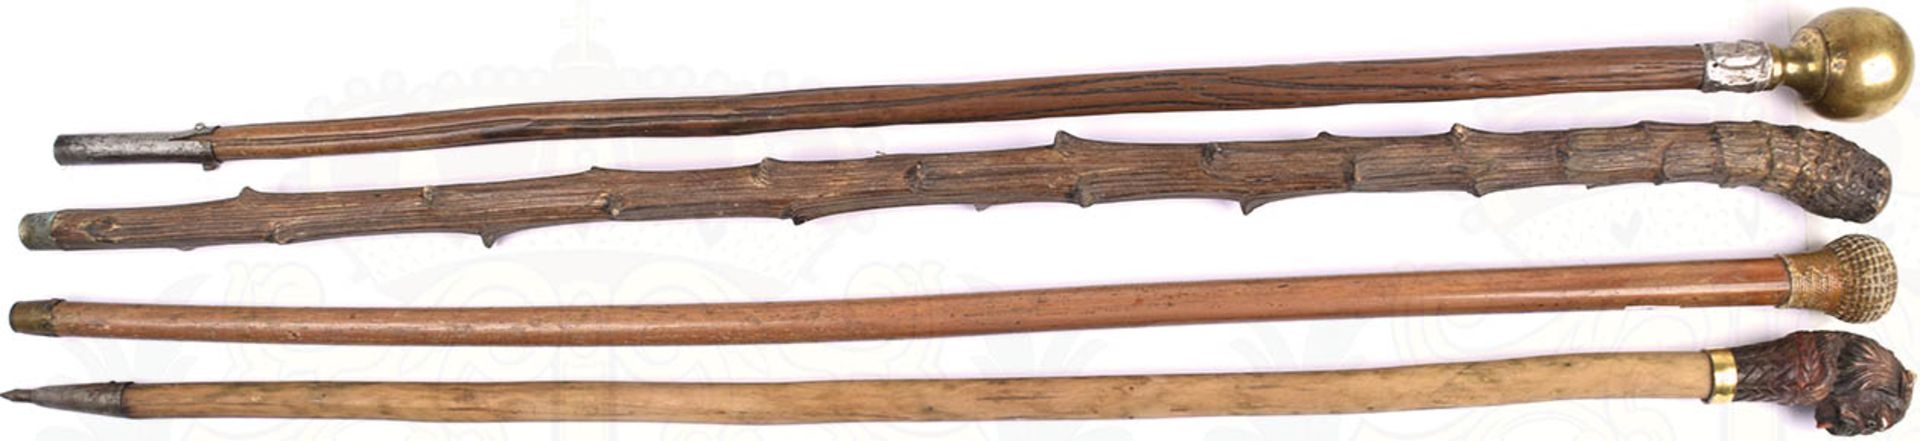 4 GEHSTÖCKE, versch. Holzsorten, L. 88-90 cm, 1 Kugelknauf, Messing, 2 plastisch gearbeitete Knäufe,